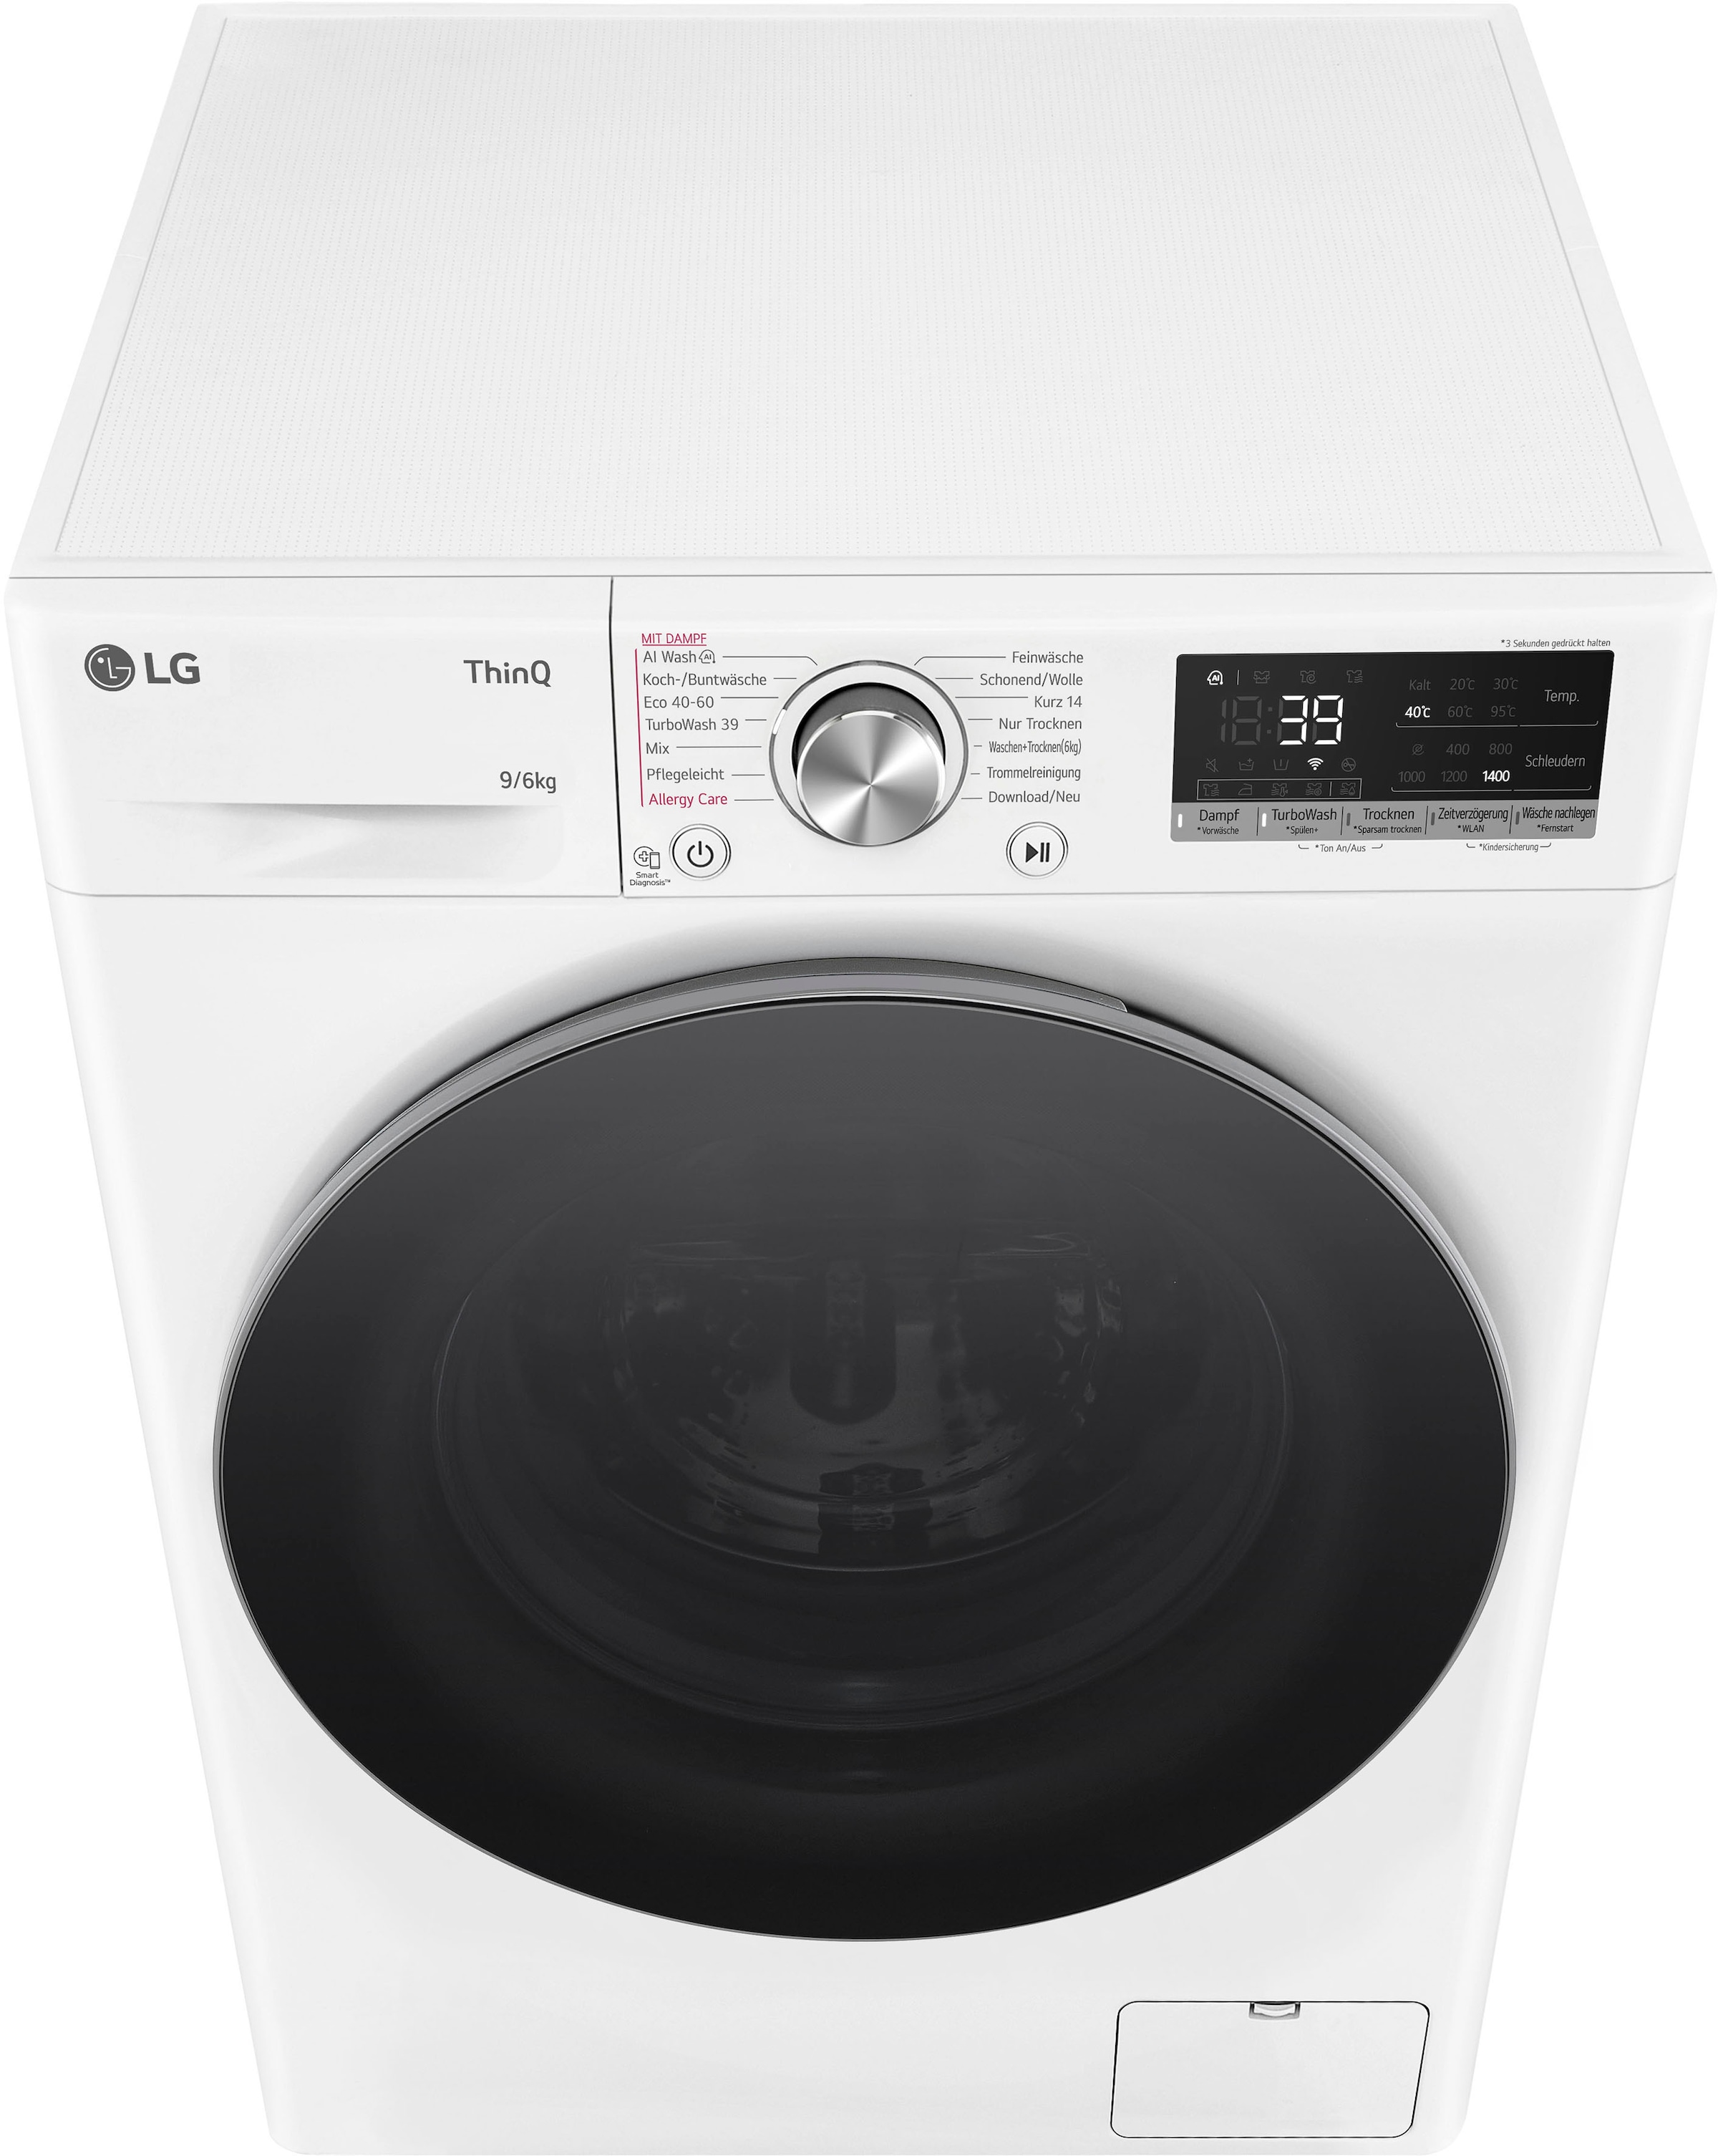 LG Waschtrockner »W4WR70961«, Serie 7 kaufen bei OTTO